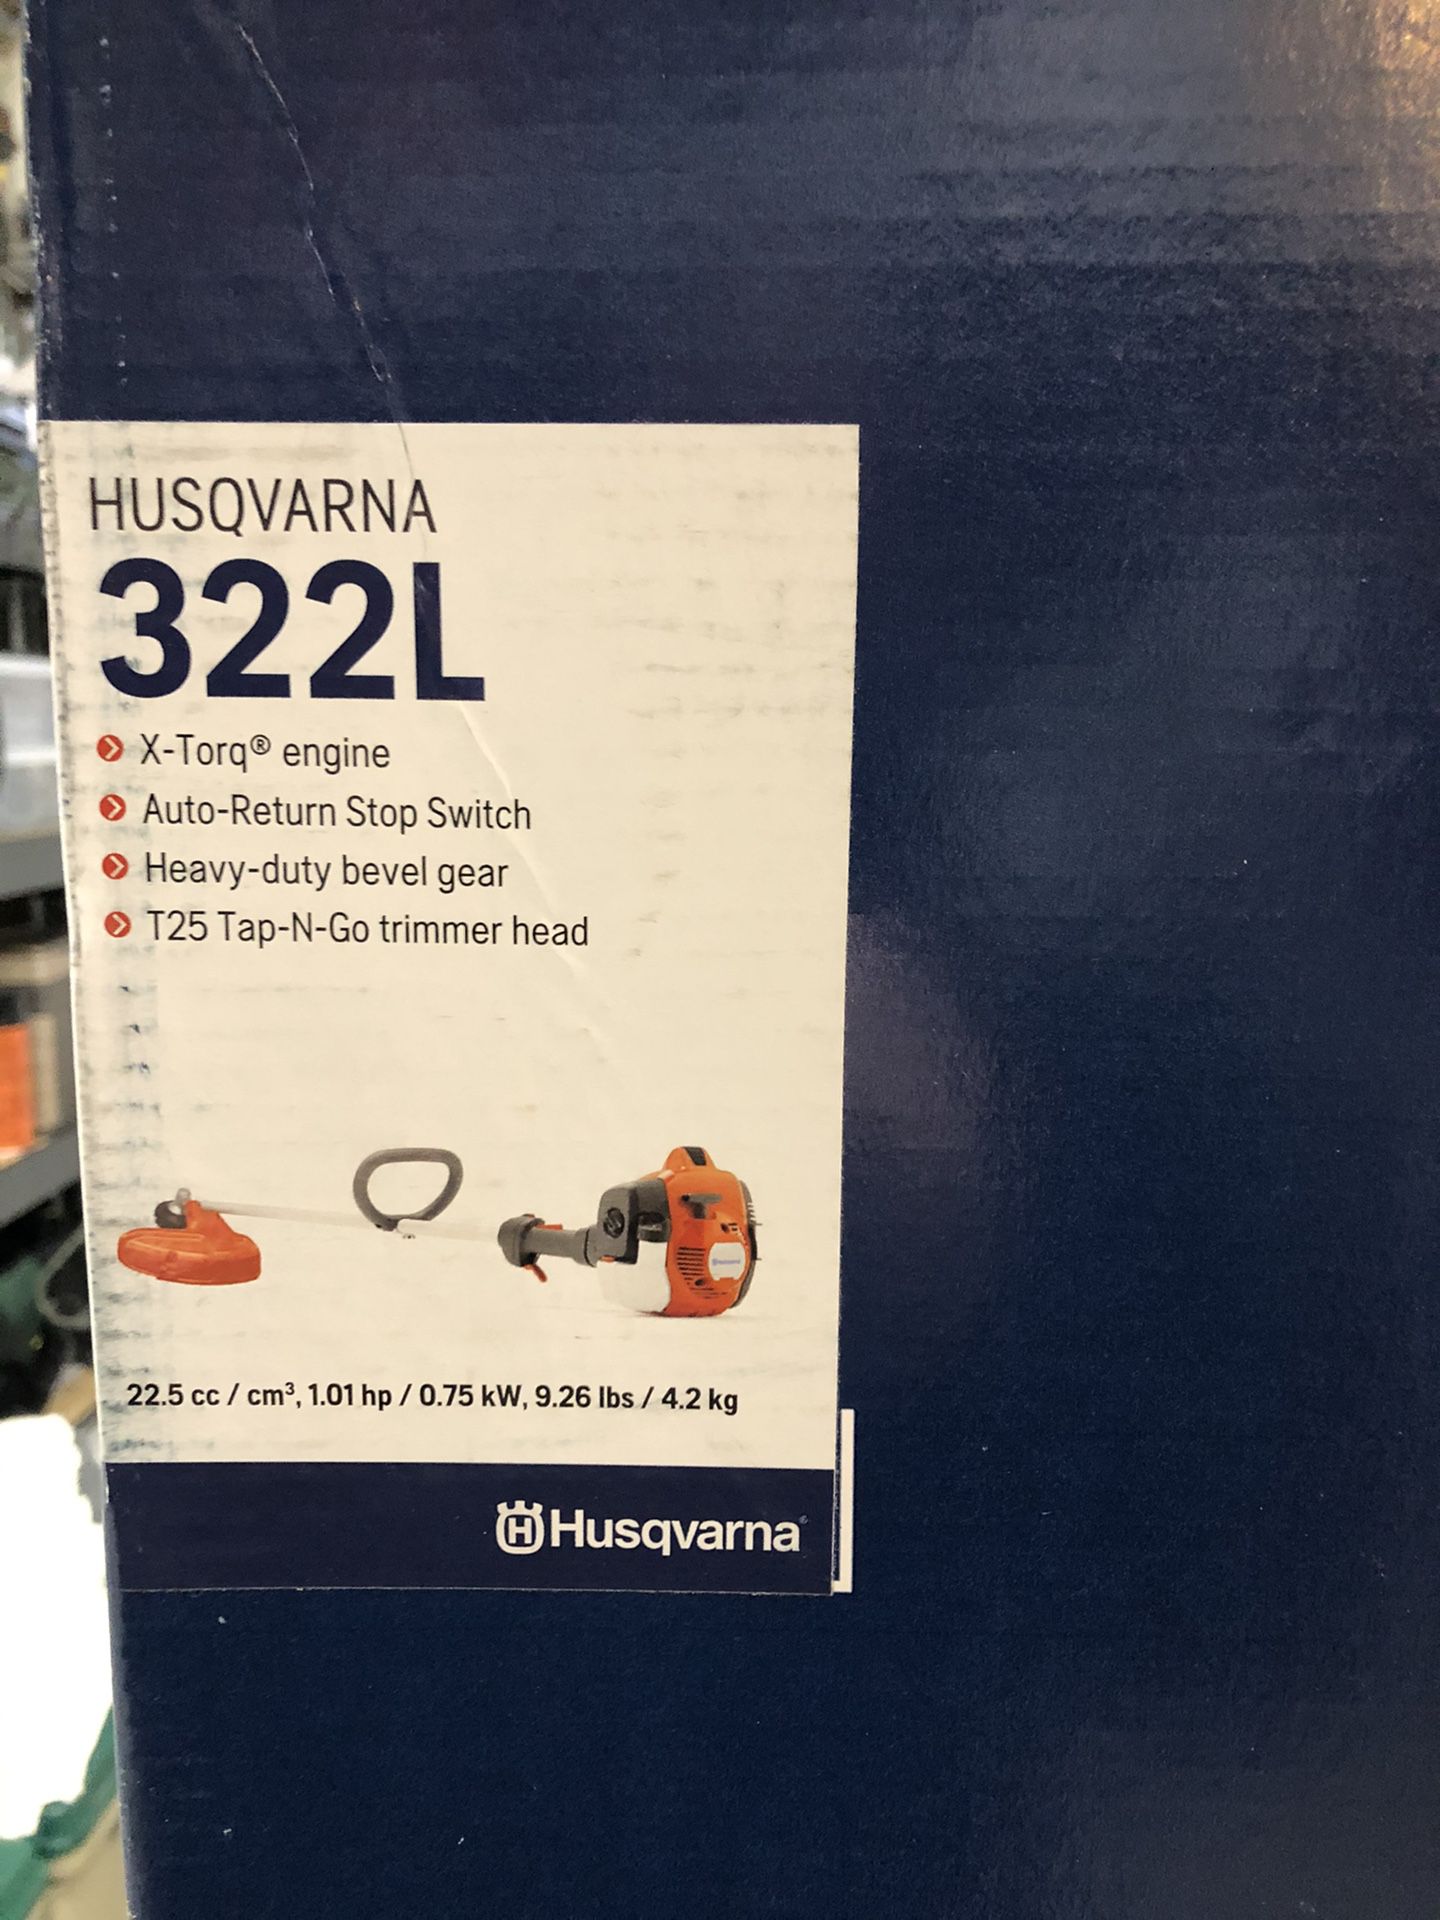 Husqvarna 322L Gas Trimmer - Brand New